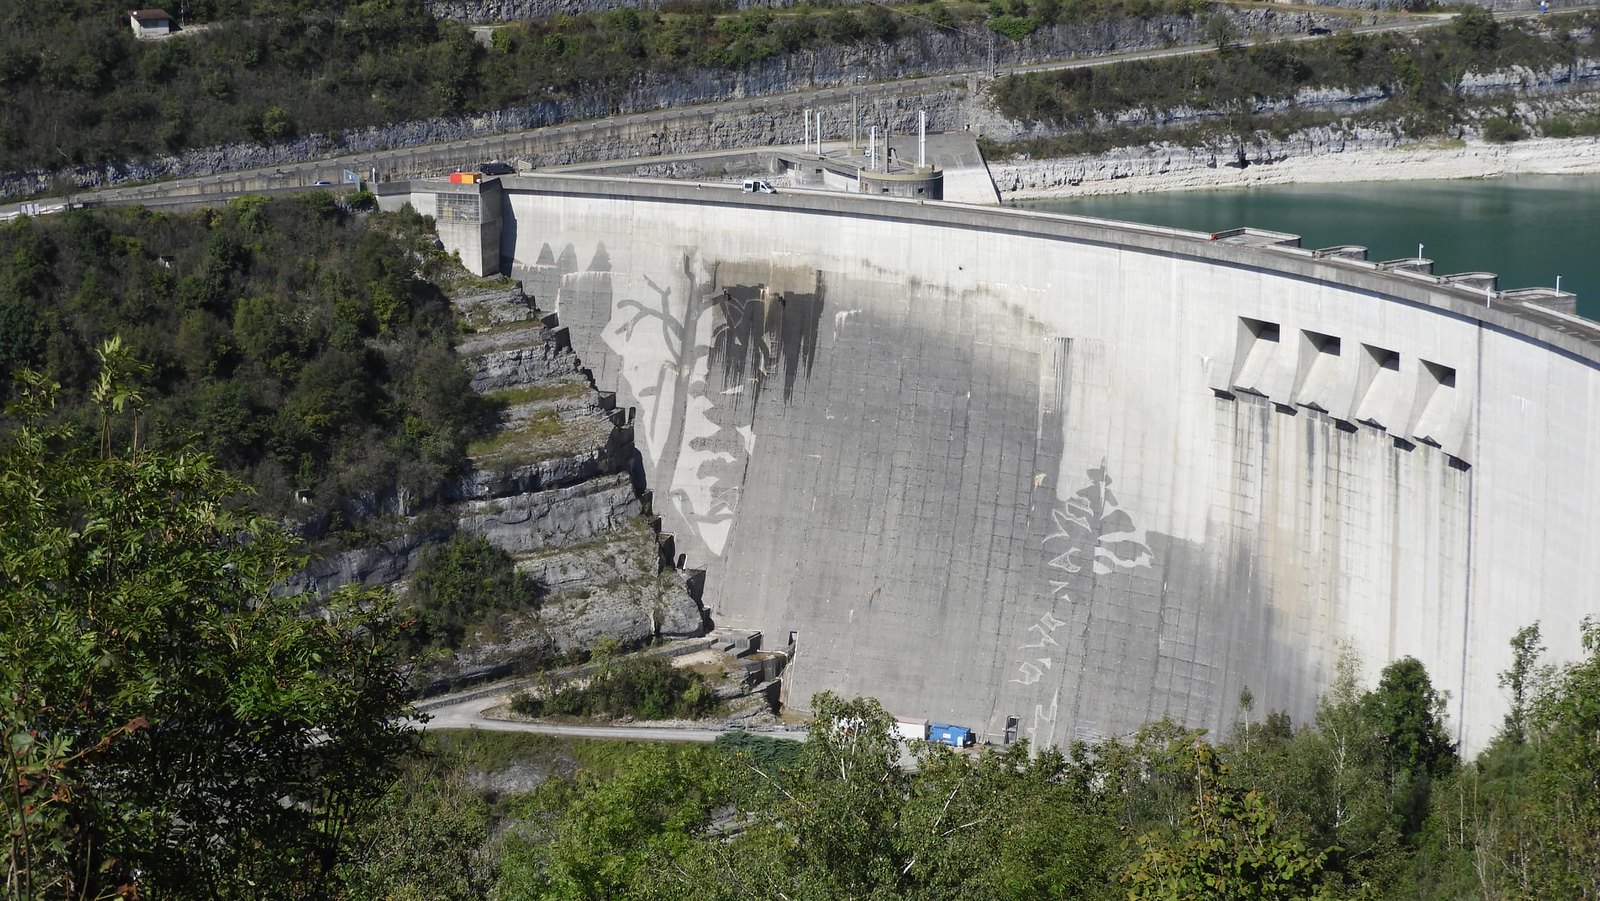 Réalisation d'une fresque sur le barrage de Vouglans